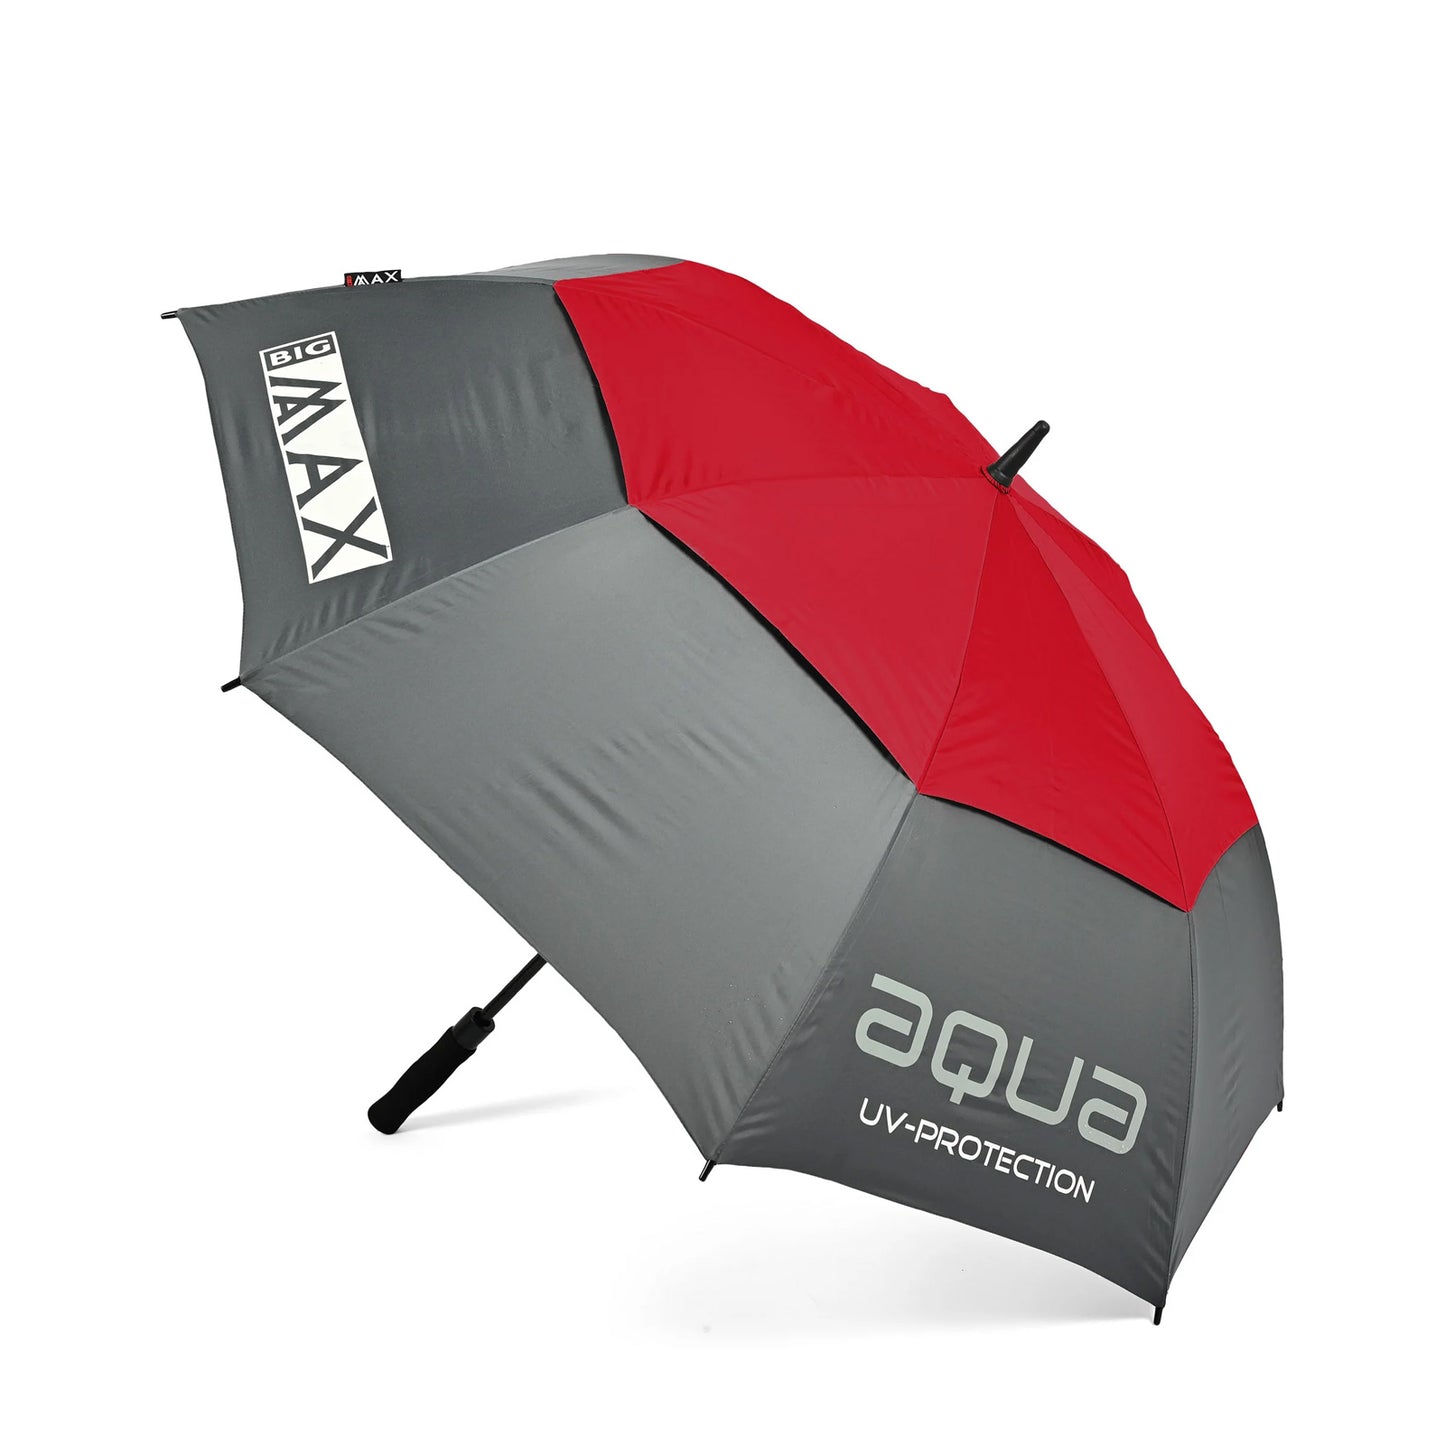 Big Max Aqua UV 58" Double Canopy Umbrella